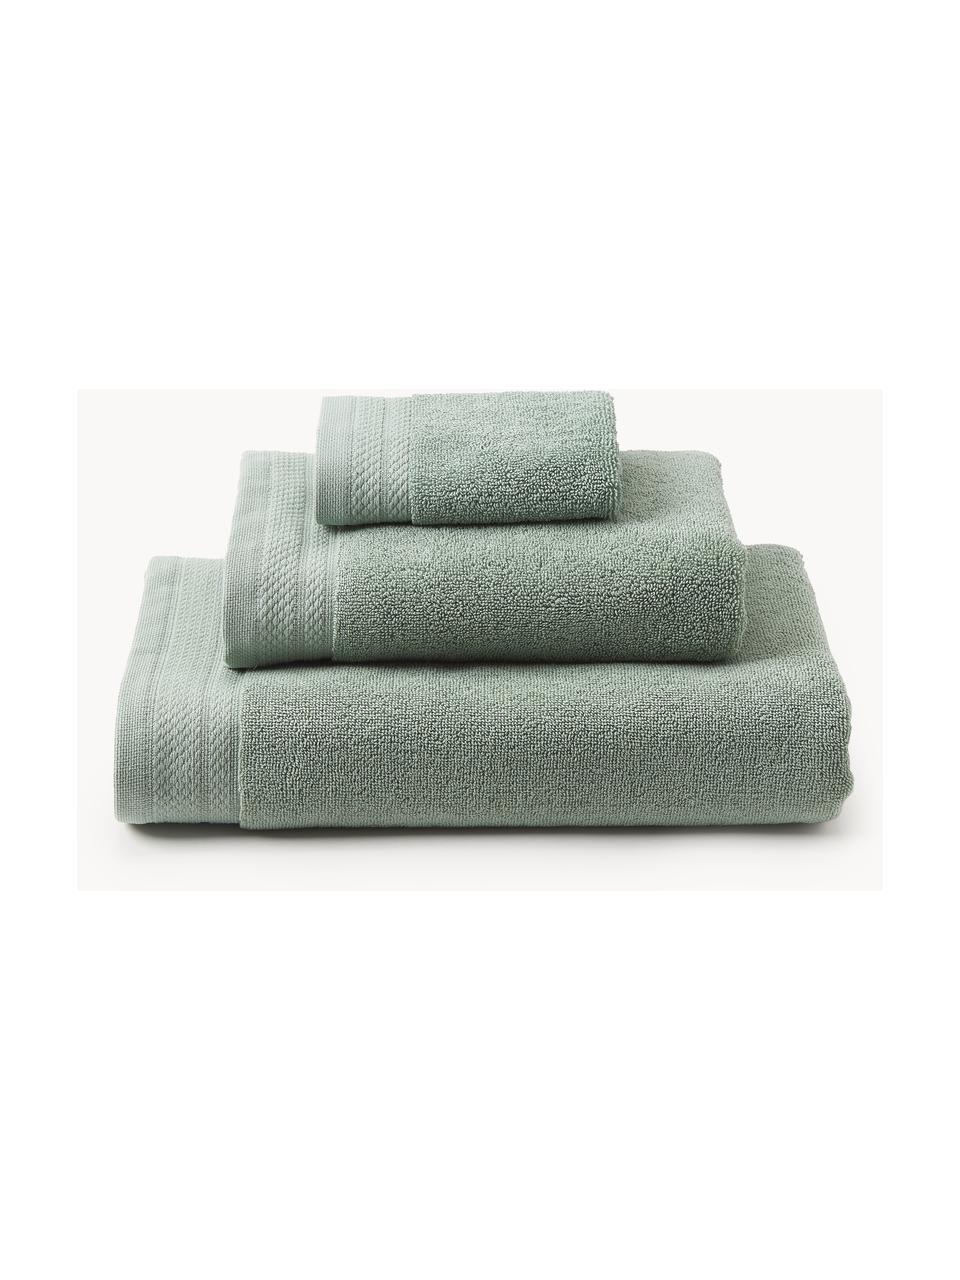 Set asciugamani in cotone organico Premium 6 pz, 100% cotone organico certificato GOTS (da GCL International, GCL-300517).
Qualità pesante, 600 g/m², Verde salvia, Set da 3 (asciugamano ospite, asciugamano e telo bagno)